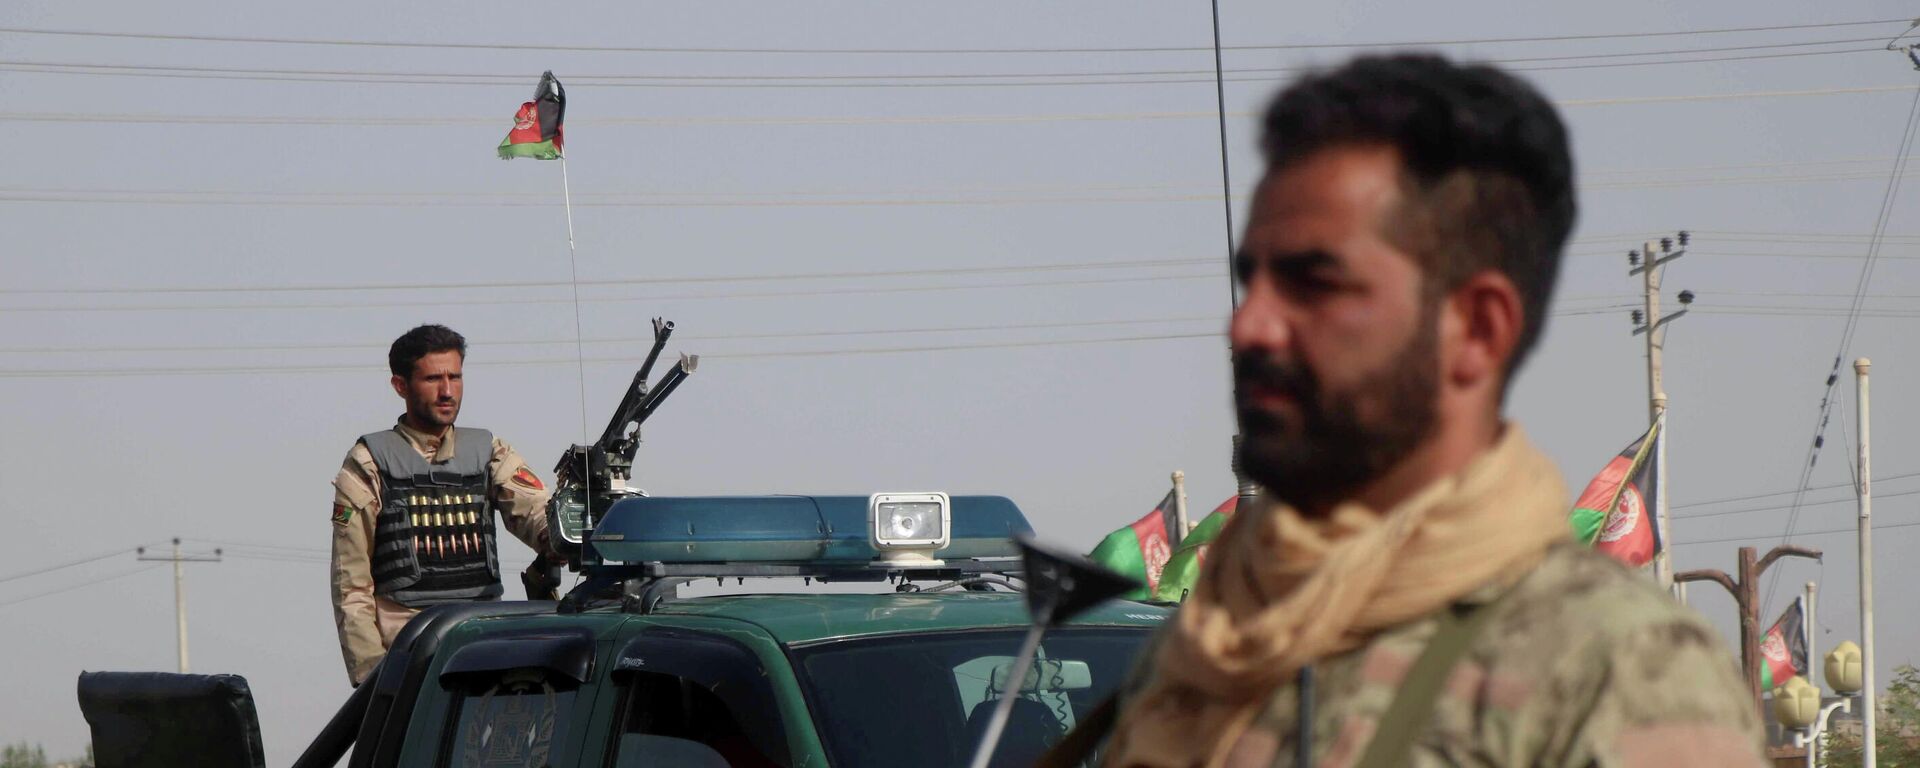 Las fuerzas de seguridad afganas vigilan un puesto de control en el distrito de Guzara de la provincia de Herat, Afganistán, el 9 de julio de 2021 - Sputnik Mundo, 1920, 16.07.2021